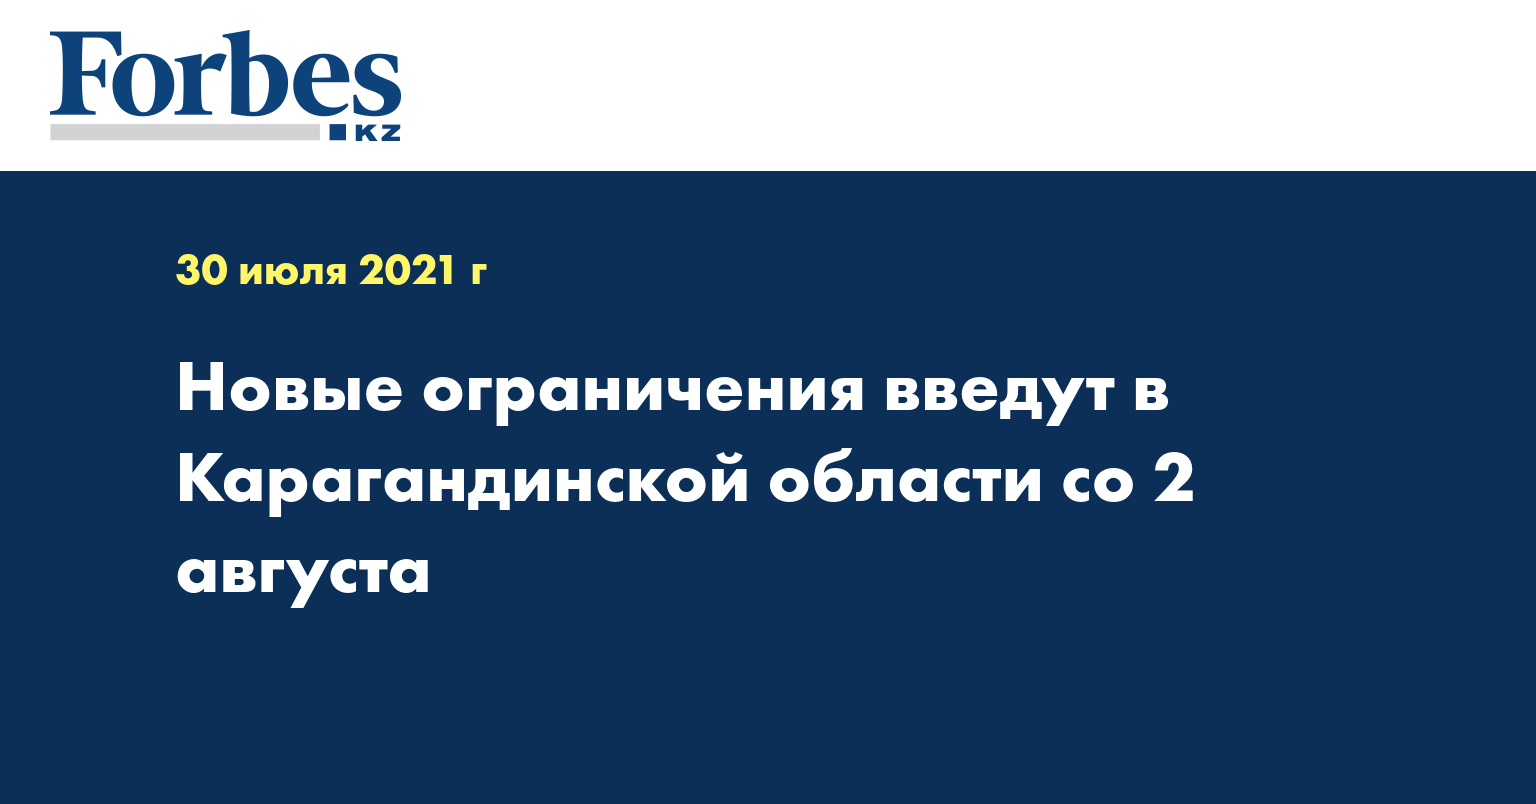  Новые ограничения введут в Карагандинской области со 2 августа